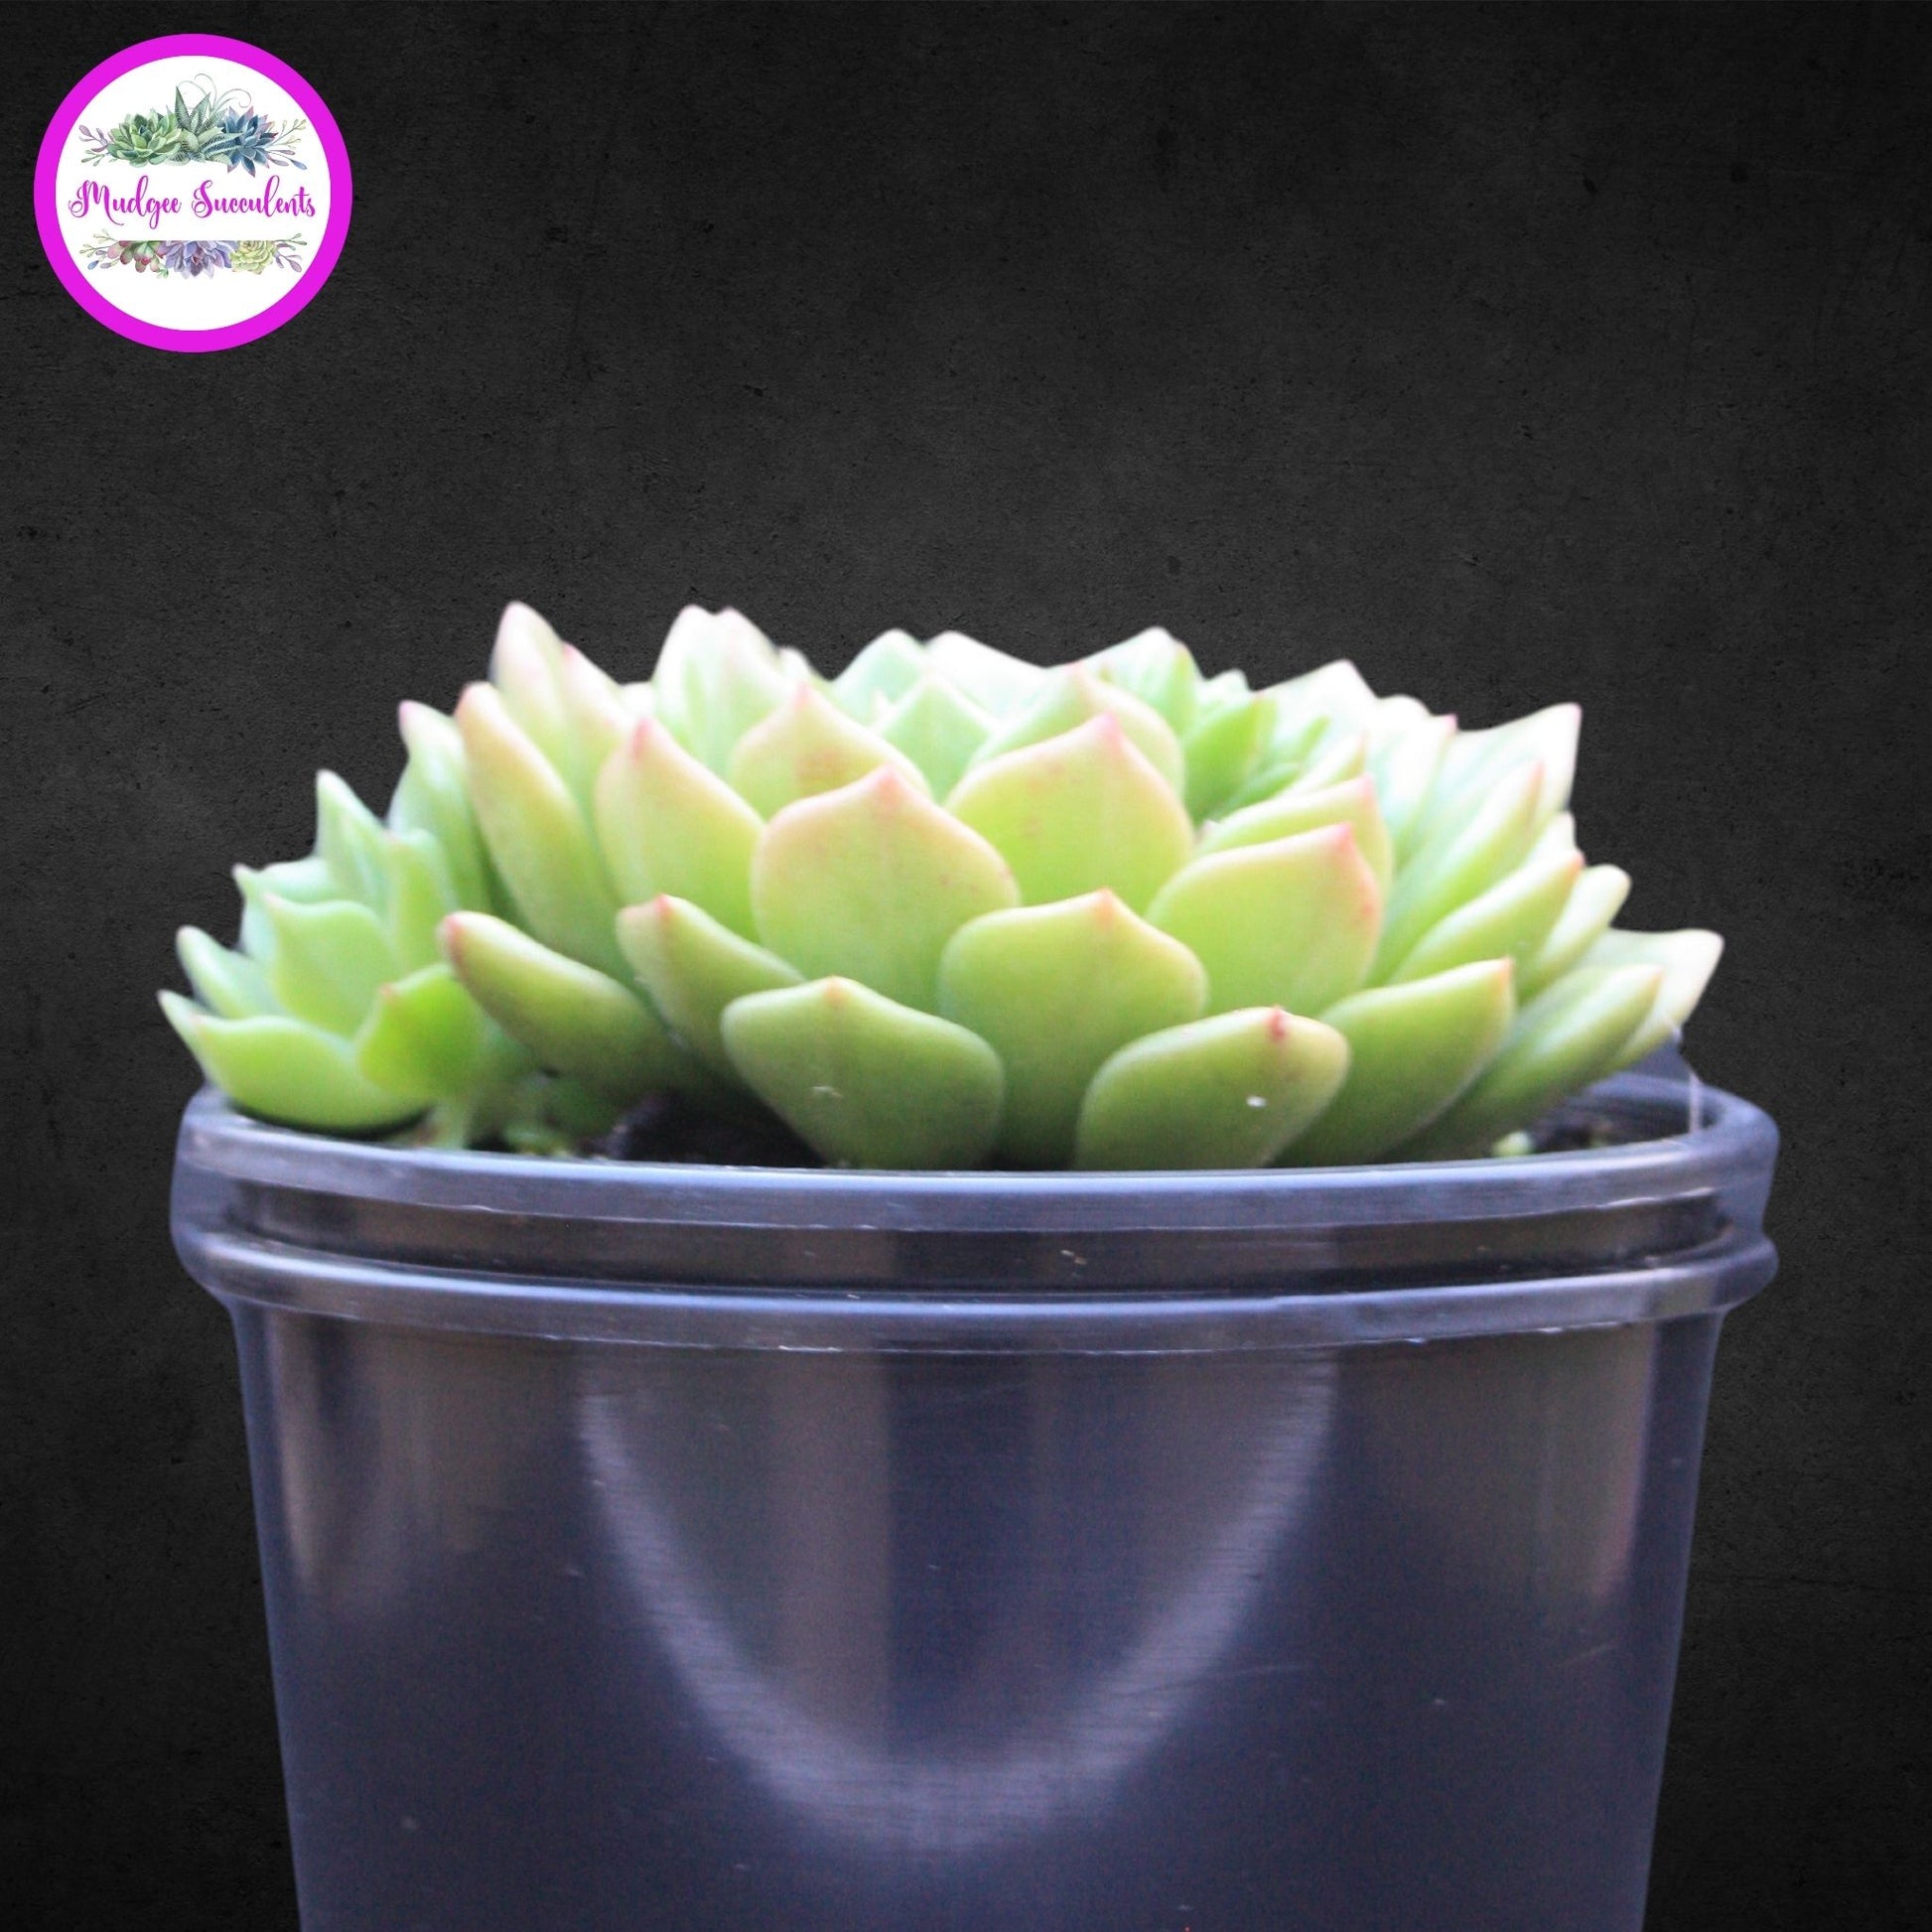 Succulent Plant - Echeveria ‘Leisal’ - Mudgee Succulents Online Shop